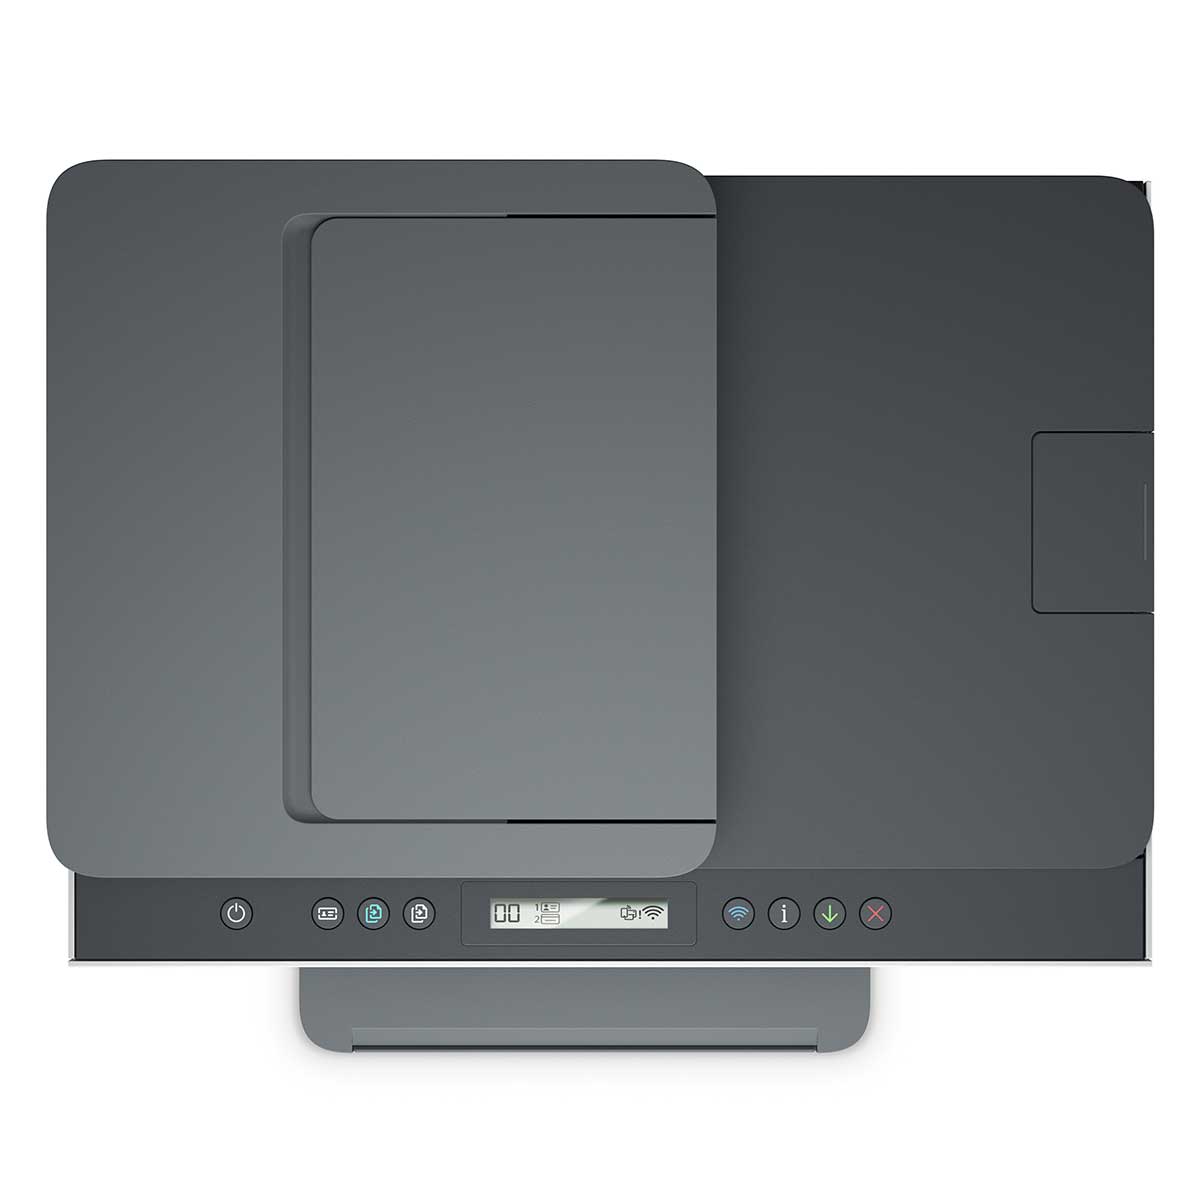 impressora-multifuncional-hp-smart-tank-754-tanque-de-tinta-colorida-scanner-duplex-wi-fi-usb-bluetooth-bivolt---2h0a6a-4.jpg